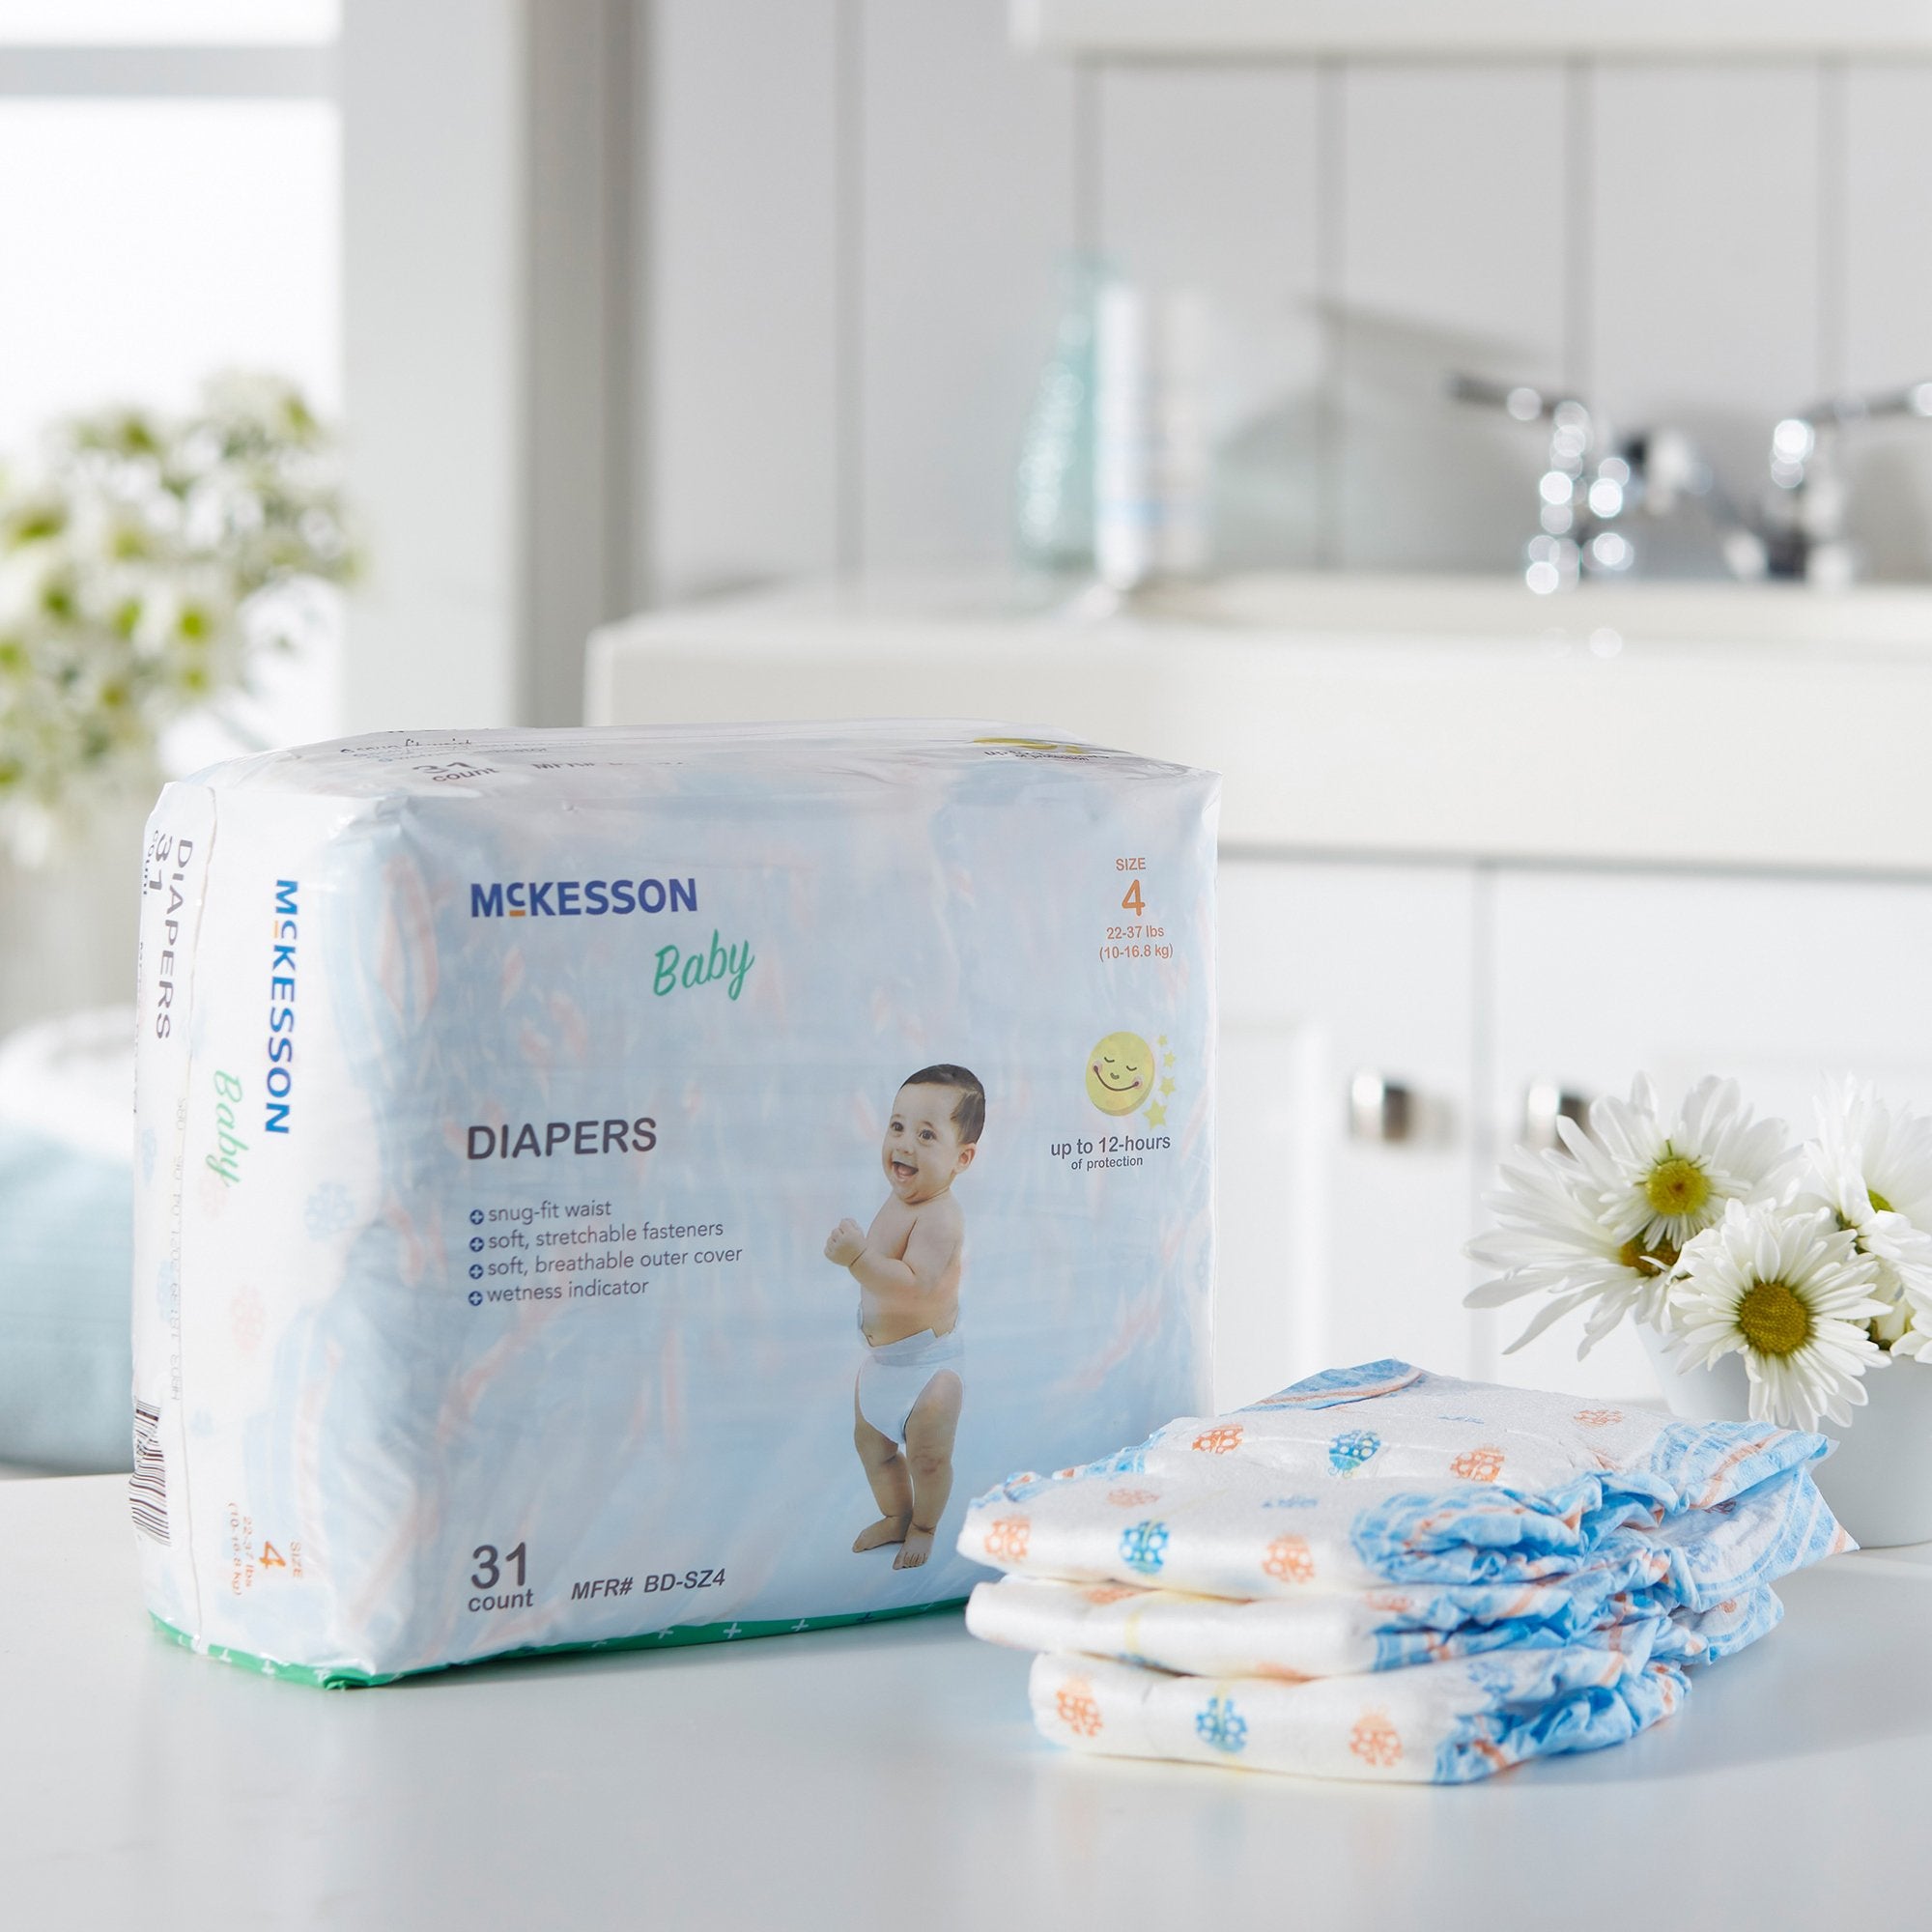 McKesson Baby Diaper, Size 4